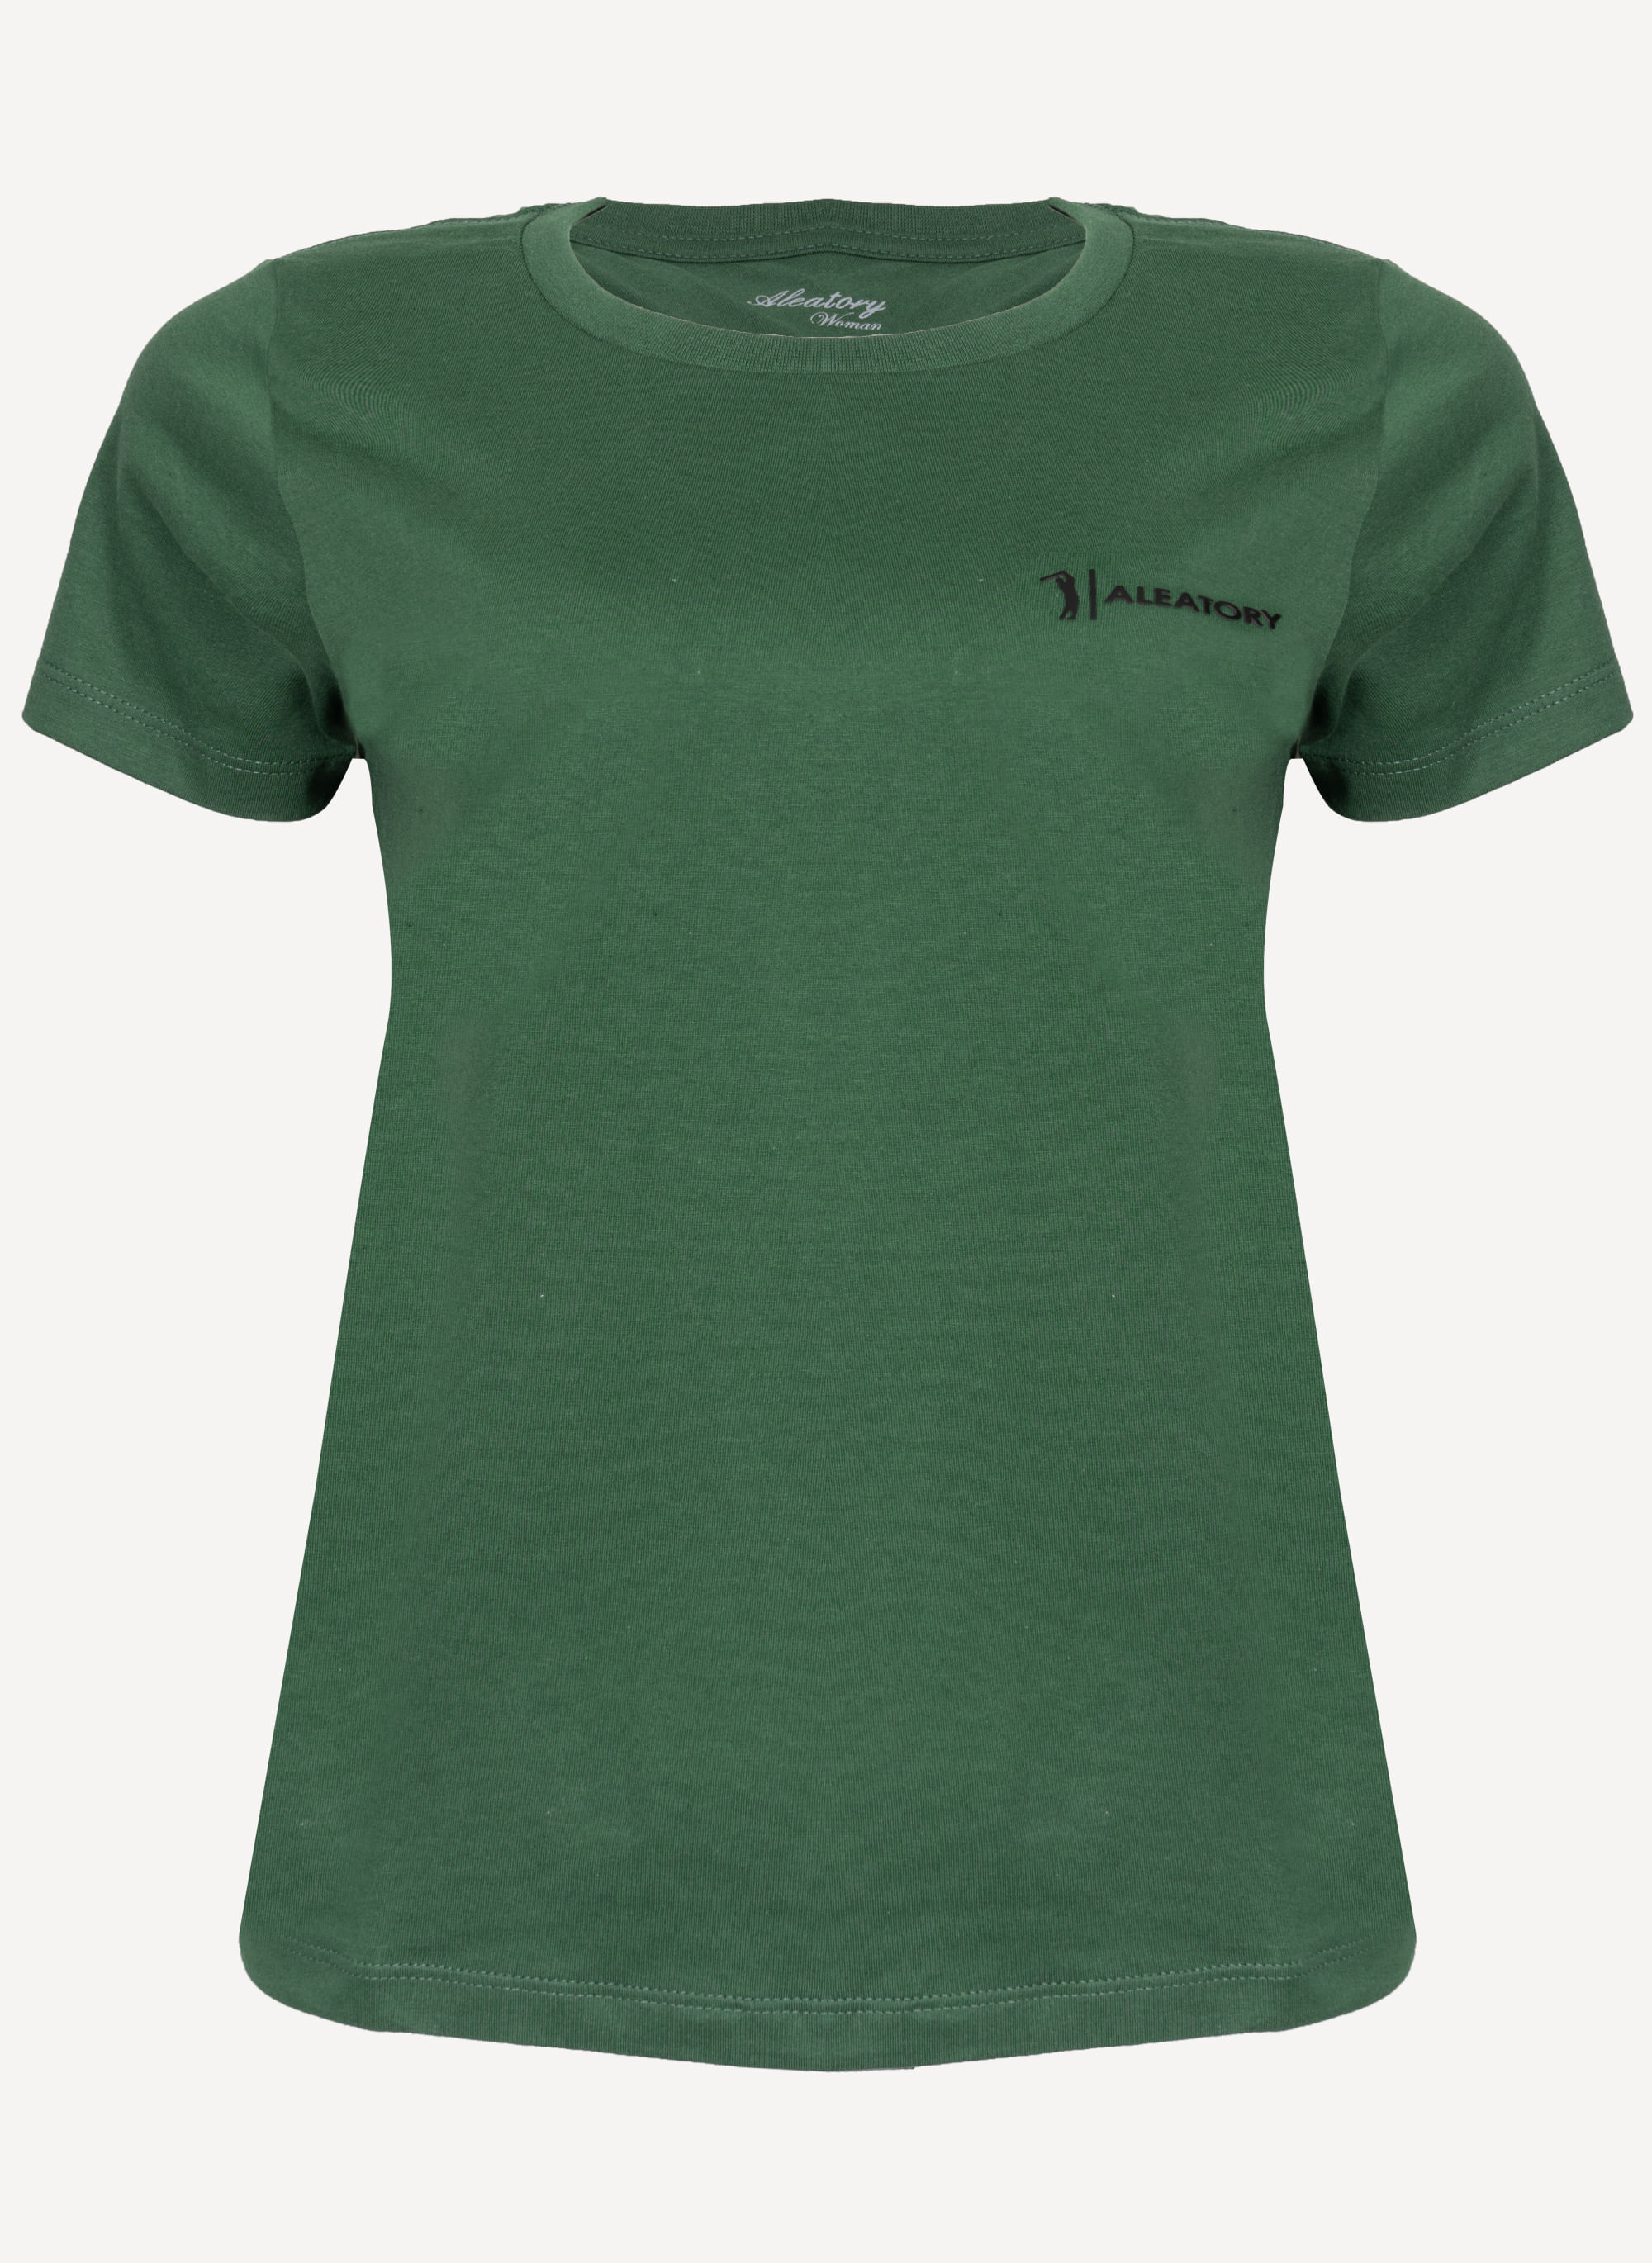 Camiseta-Feminina-Aleatory-Estampada-Fine-Verde-Verde-P